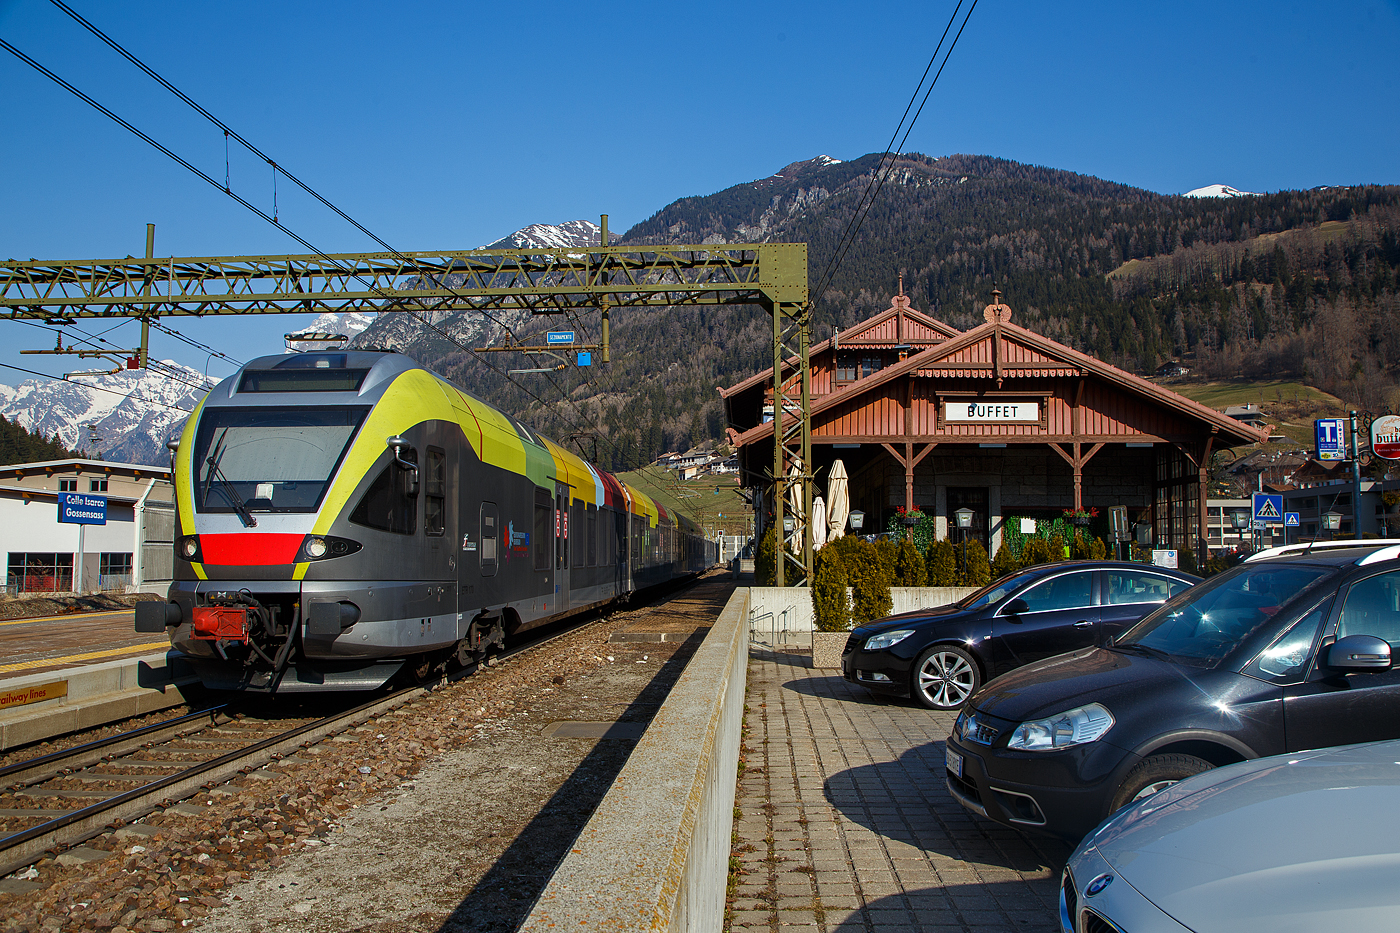 Der Trenitalia ETR 170 217, ein sechsteiliger Stadler FLIRT (MS für I / A) hat am 26.03.2022, als Regionalzug von Brenner/Brennero via Bozen/Bolzano nach Meran/Merano, den Bahnhof Gossensaß/Colle Isarco erreicht.

Diese sechsteiligen Elektrotriebzüge vom Typ Stadler FLIRT wurden für den grenzüberschreitenden Verkehr zwischen Italien und Österreich konzipiert. Die 160 km/h schnellen Züge werden auf den Linien Meran-Bozen-Brenner, Unterland Trento-Ala und Franzensfeste-Innichen-Lienz (Pustertal) eingesetzt. Die aktuelle Flotte besteht derzeit aus 25 FLIRTs. Sie sollen auch noch im Vinschgau (Meran-Mals), unter 25 kV 50 Hz, eingesetzt werden. Sie sind mit dem Zugsicherungssystem ETCS ausgestattet. Die Flachbautechnik ermöglicht den direkten Einstieg ohne Podest. Der klimatisierte Innenraum und das offene und transparente Design machen die Reise mit angenehm für die Passagiere. Ein modernes Informationssystem versorgt die Fahrgäste mit allen notwendigen Informationen, sie sind zudem mit WLAN ausgestattet.

TECHNISCHE DATEN:
Bezeichnungen: ETR 170 (6-Teiler)
Spurweite:  1.435 mm (Normalspur)
Achsformel: Bo’ 2’2’2’2’2’ Bo’
Länge über kupplung:106.578 mm 
Fahrzeugbreite: 2.800 mm
Fahrzeughöhe: 4.150 mm
Achsabstand in den Drehgestellen: 2.700 mm
Treibraddurchmesser: 860 mm (neu)
Laufraddurchmesser: 750 mm (neu)
Dauerleistung am Rad: 2.000 kW
Maximale Leistung am Rad: 2.600 kW
Stromsysteme: 15kV/16,7Hz; 25kV/50Hz; 3kV DC 
Anfahrzugkraft (bis 47 km/h):  200 kN
Höchstgeschwindigkeit: 160 km/h
Beschleunigung:  1,0 m/s²
Anzahl der Türen je Längsseite: 10
Breite der Türen: 1.320 mm
Maximale Sitzplätze: 258